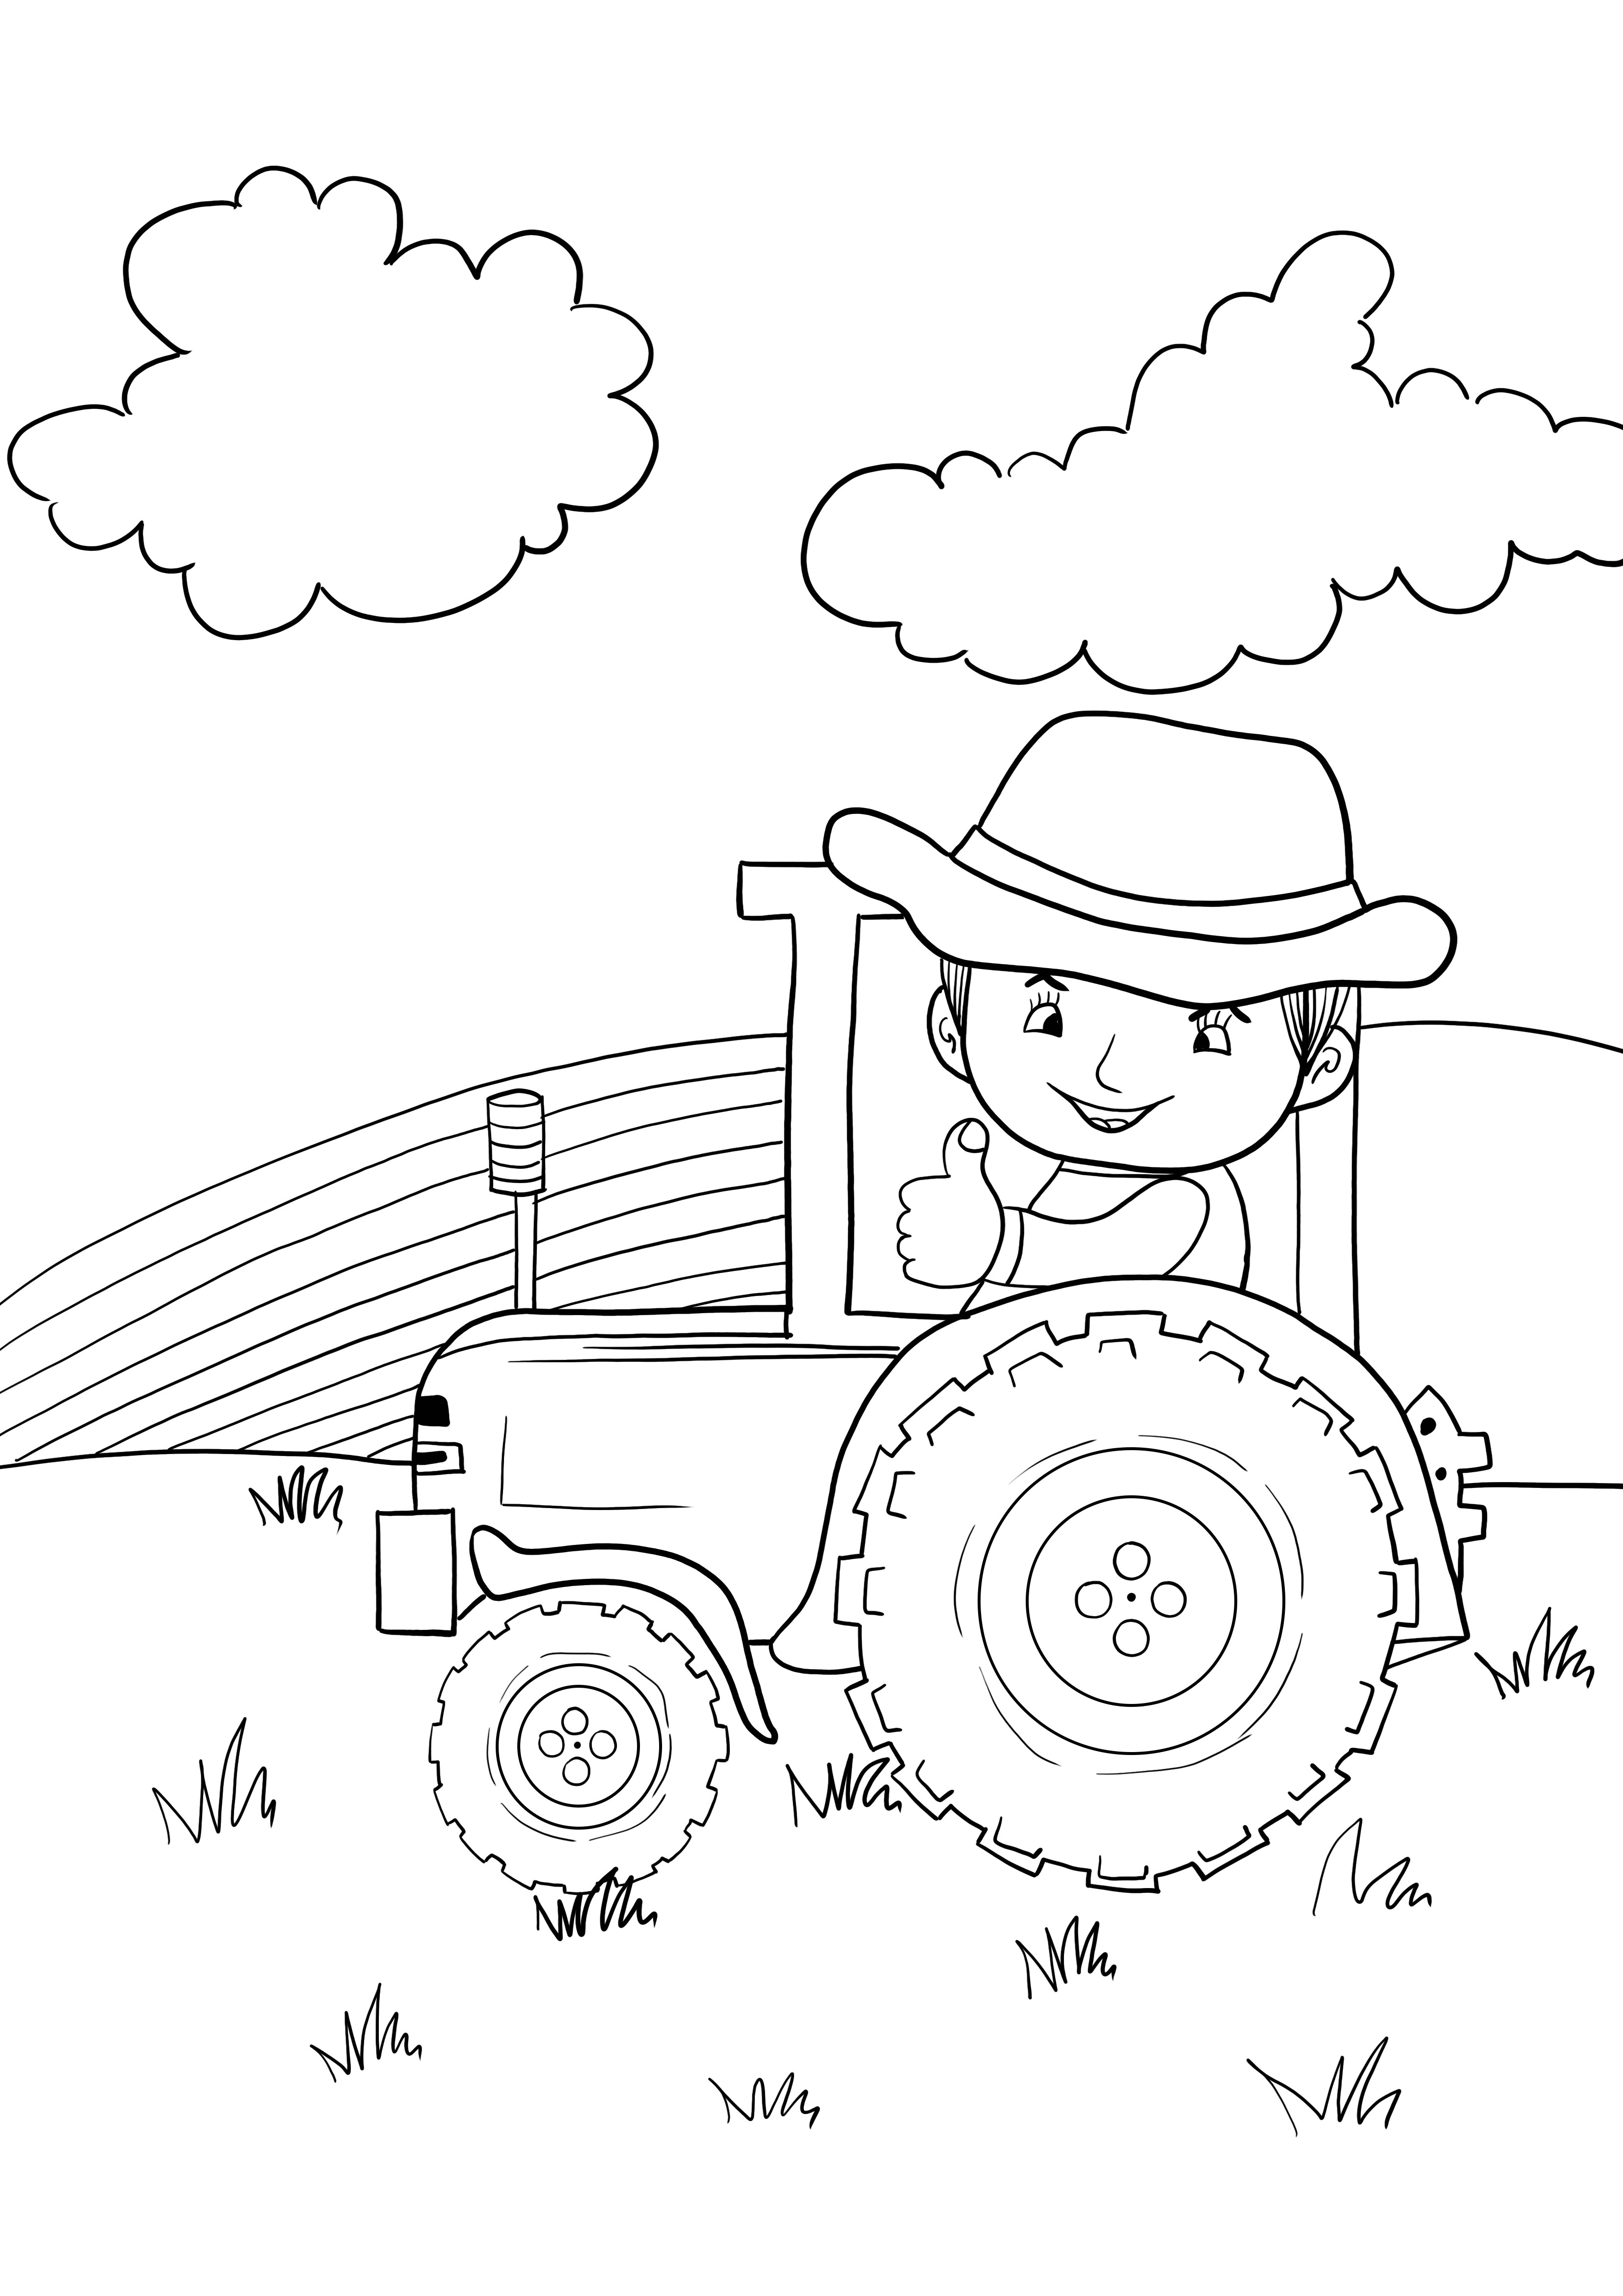 immagine del trattore agricolo da scaricare e stampare